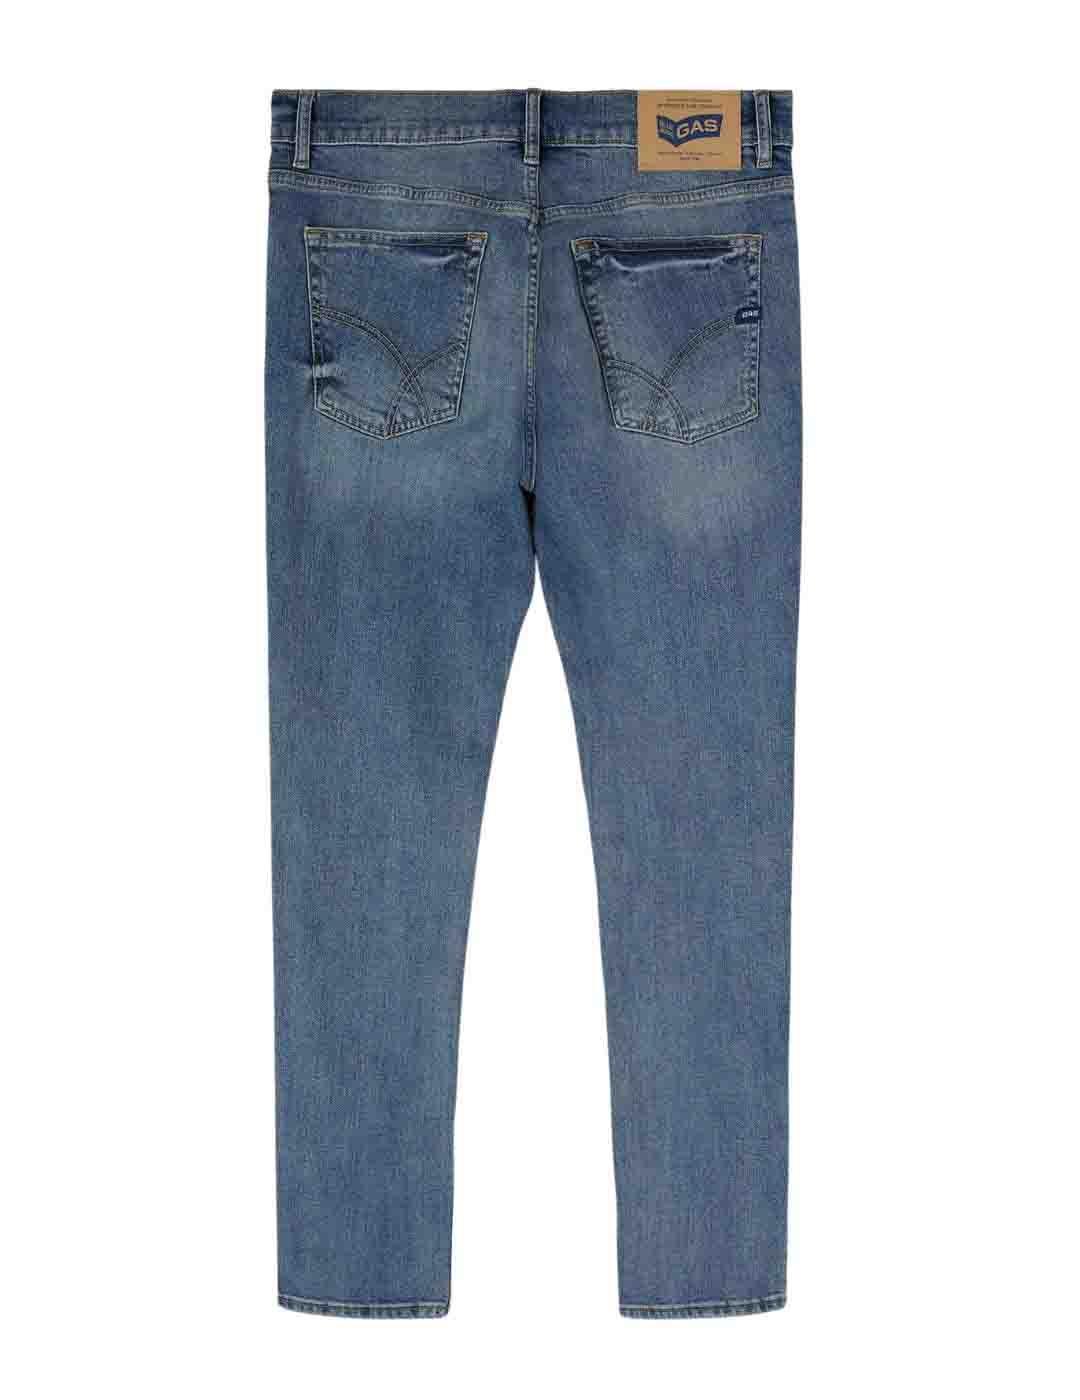 Pantalón Gas Jeans Sax Zip Rev WR74